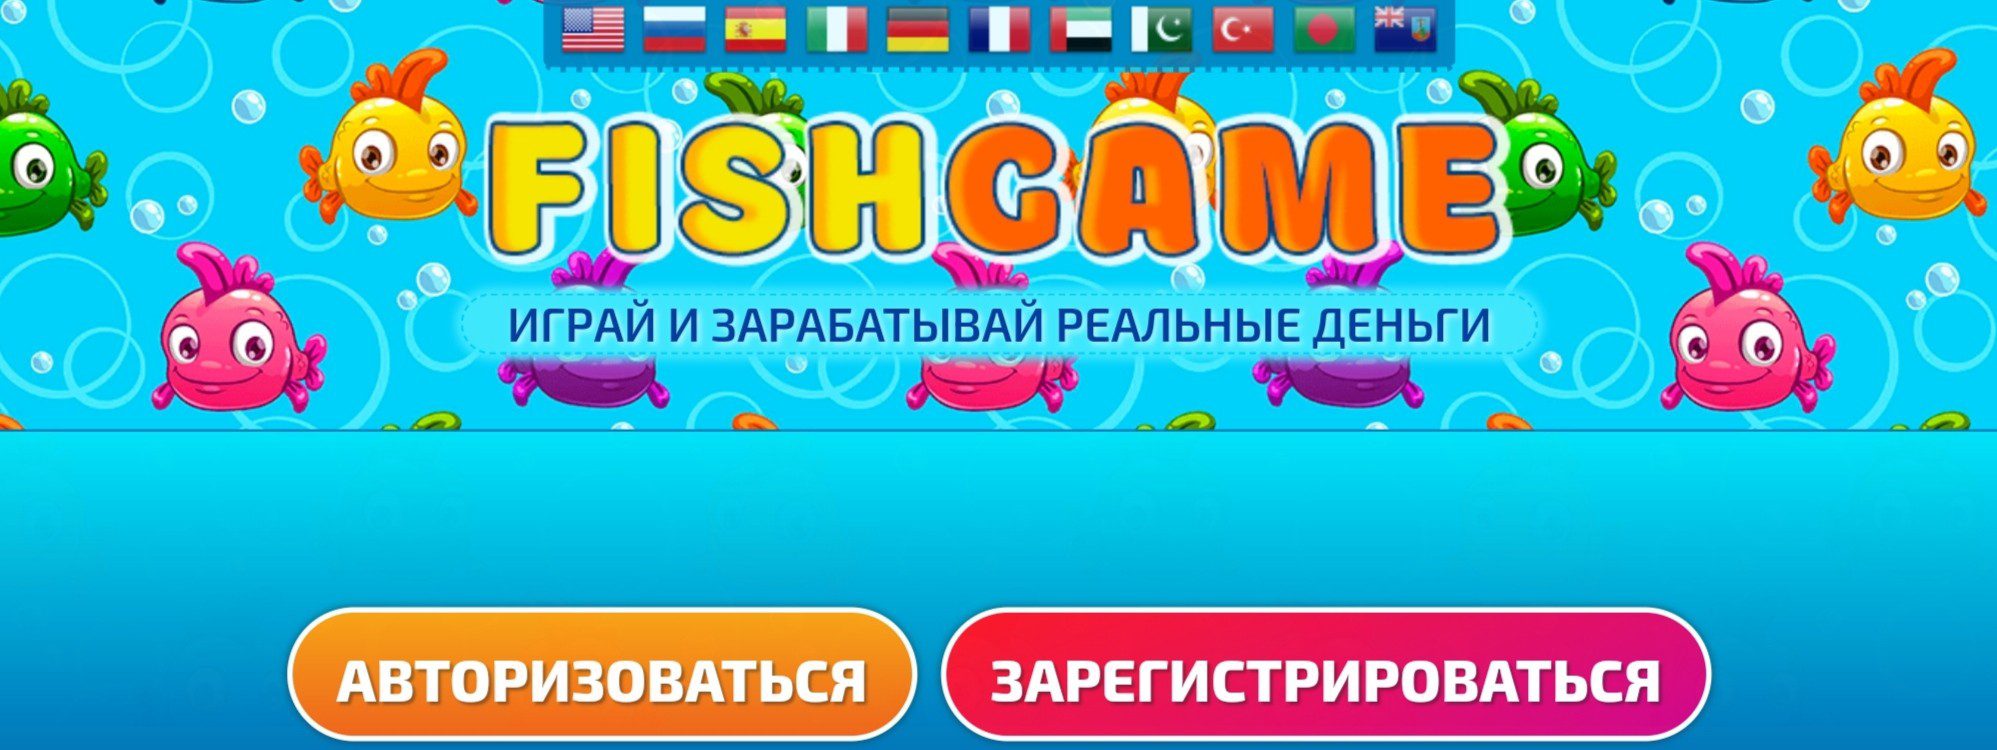 Fishgames ru обзор игры